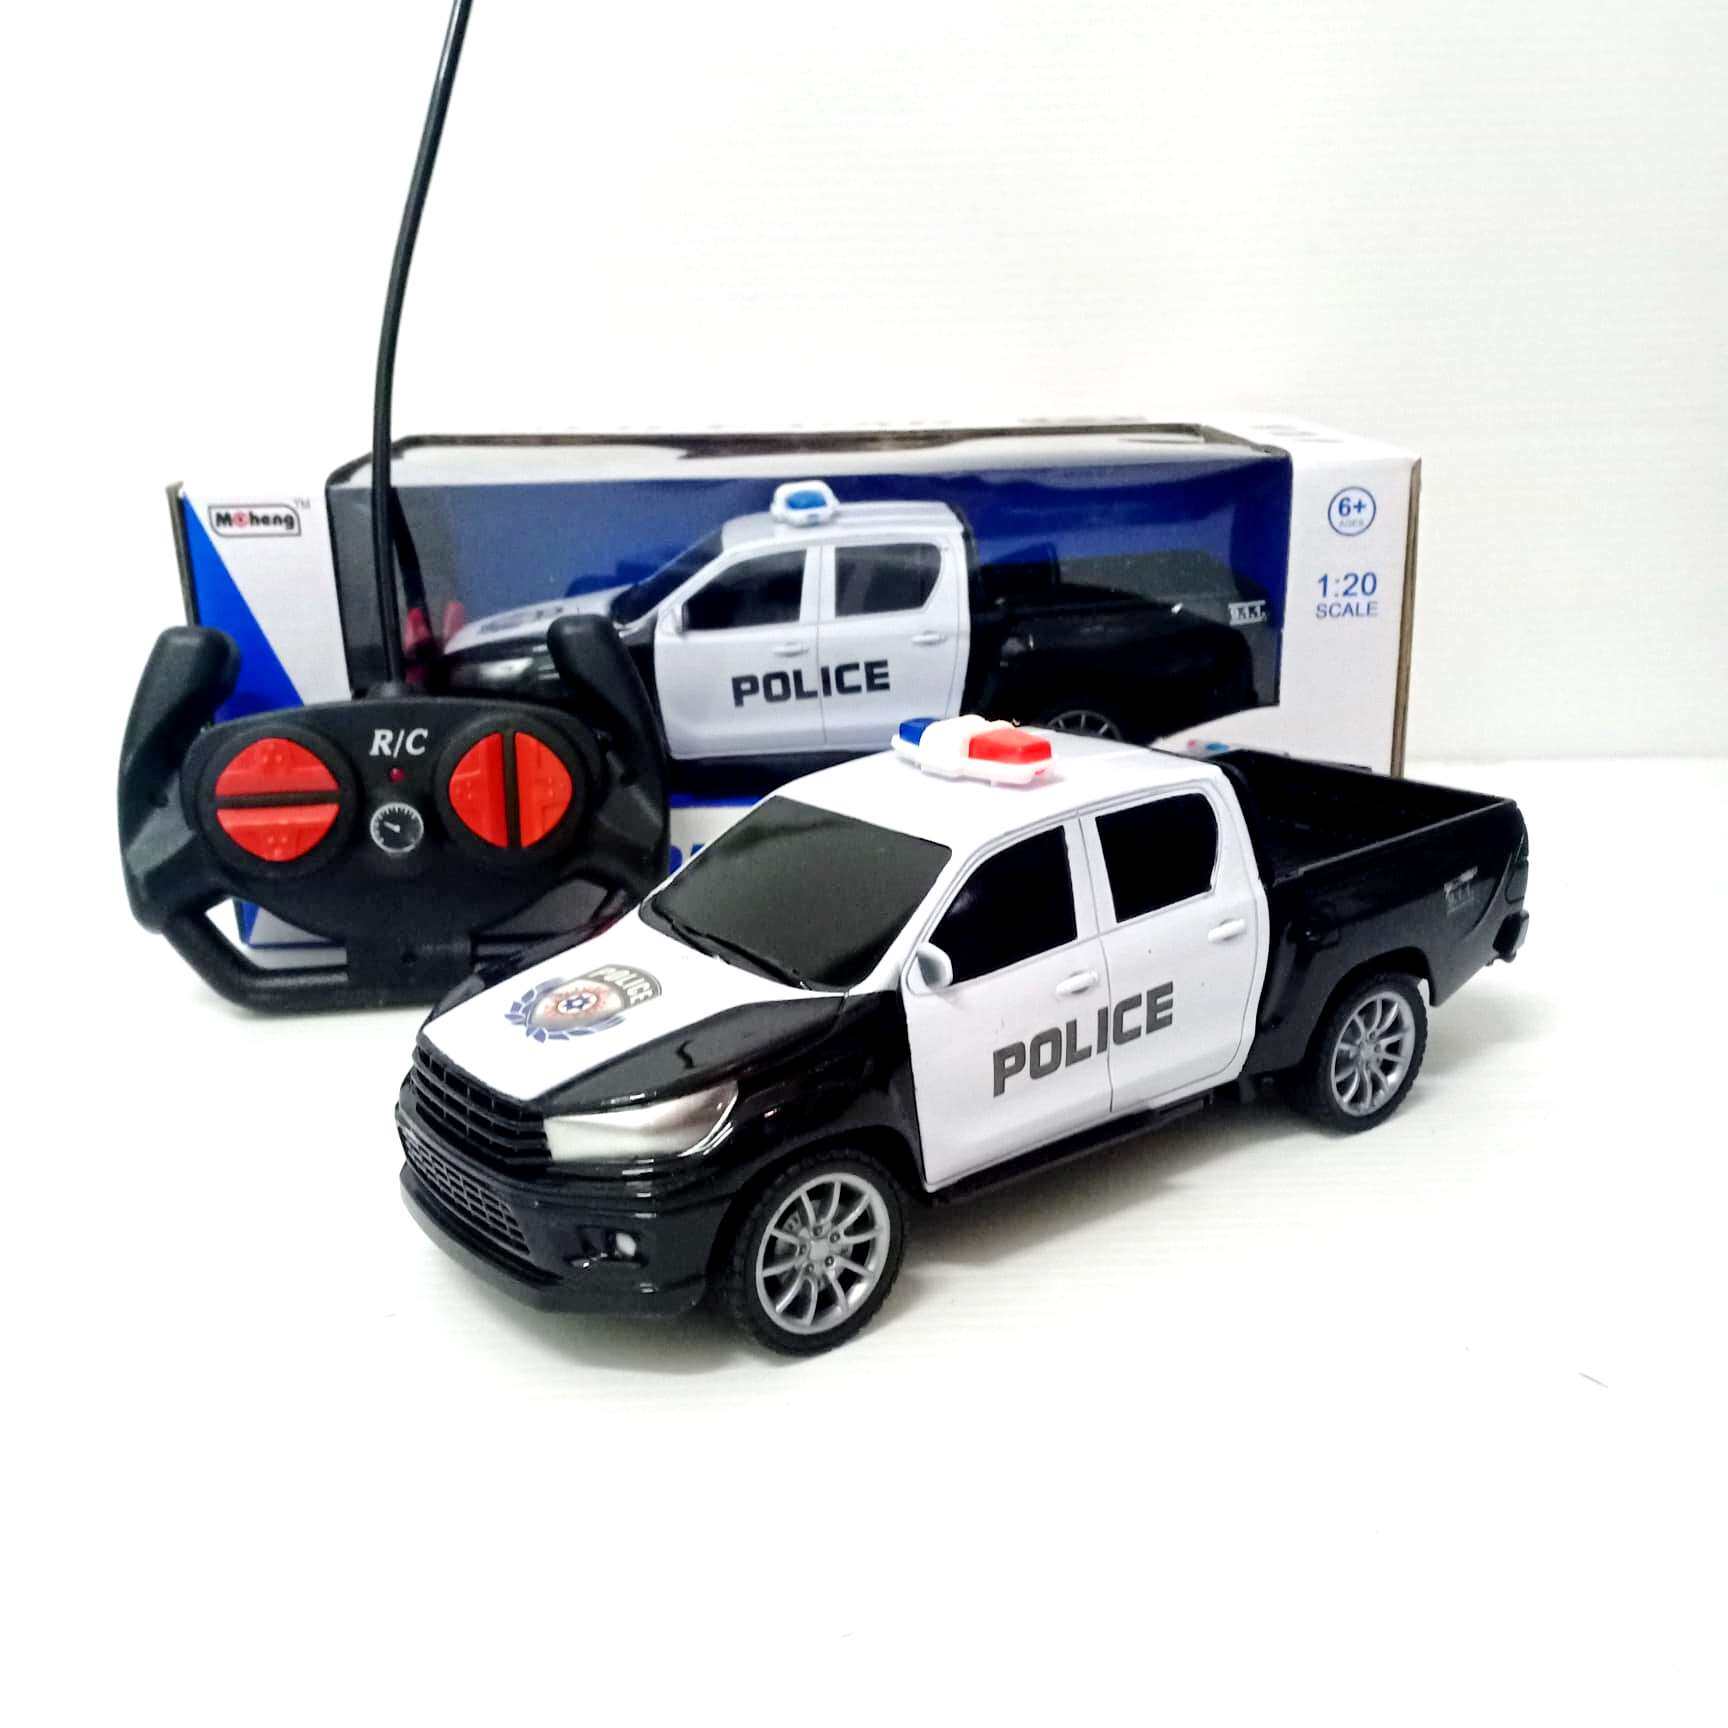 รถตำรวจบังคับวิทยุ รถตำรวจ อย่างดี ราคาถูก สินค้าจรืง ตามรูปครับ ถ่ายจากของจริงๆ รถบังคับวิทยุ